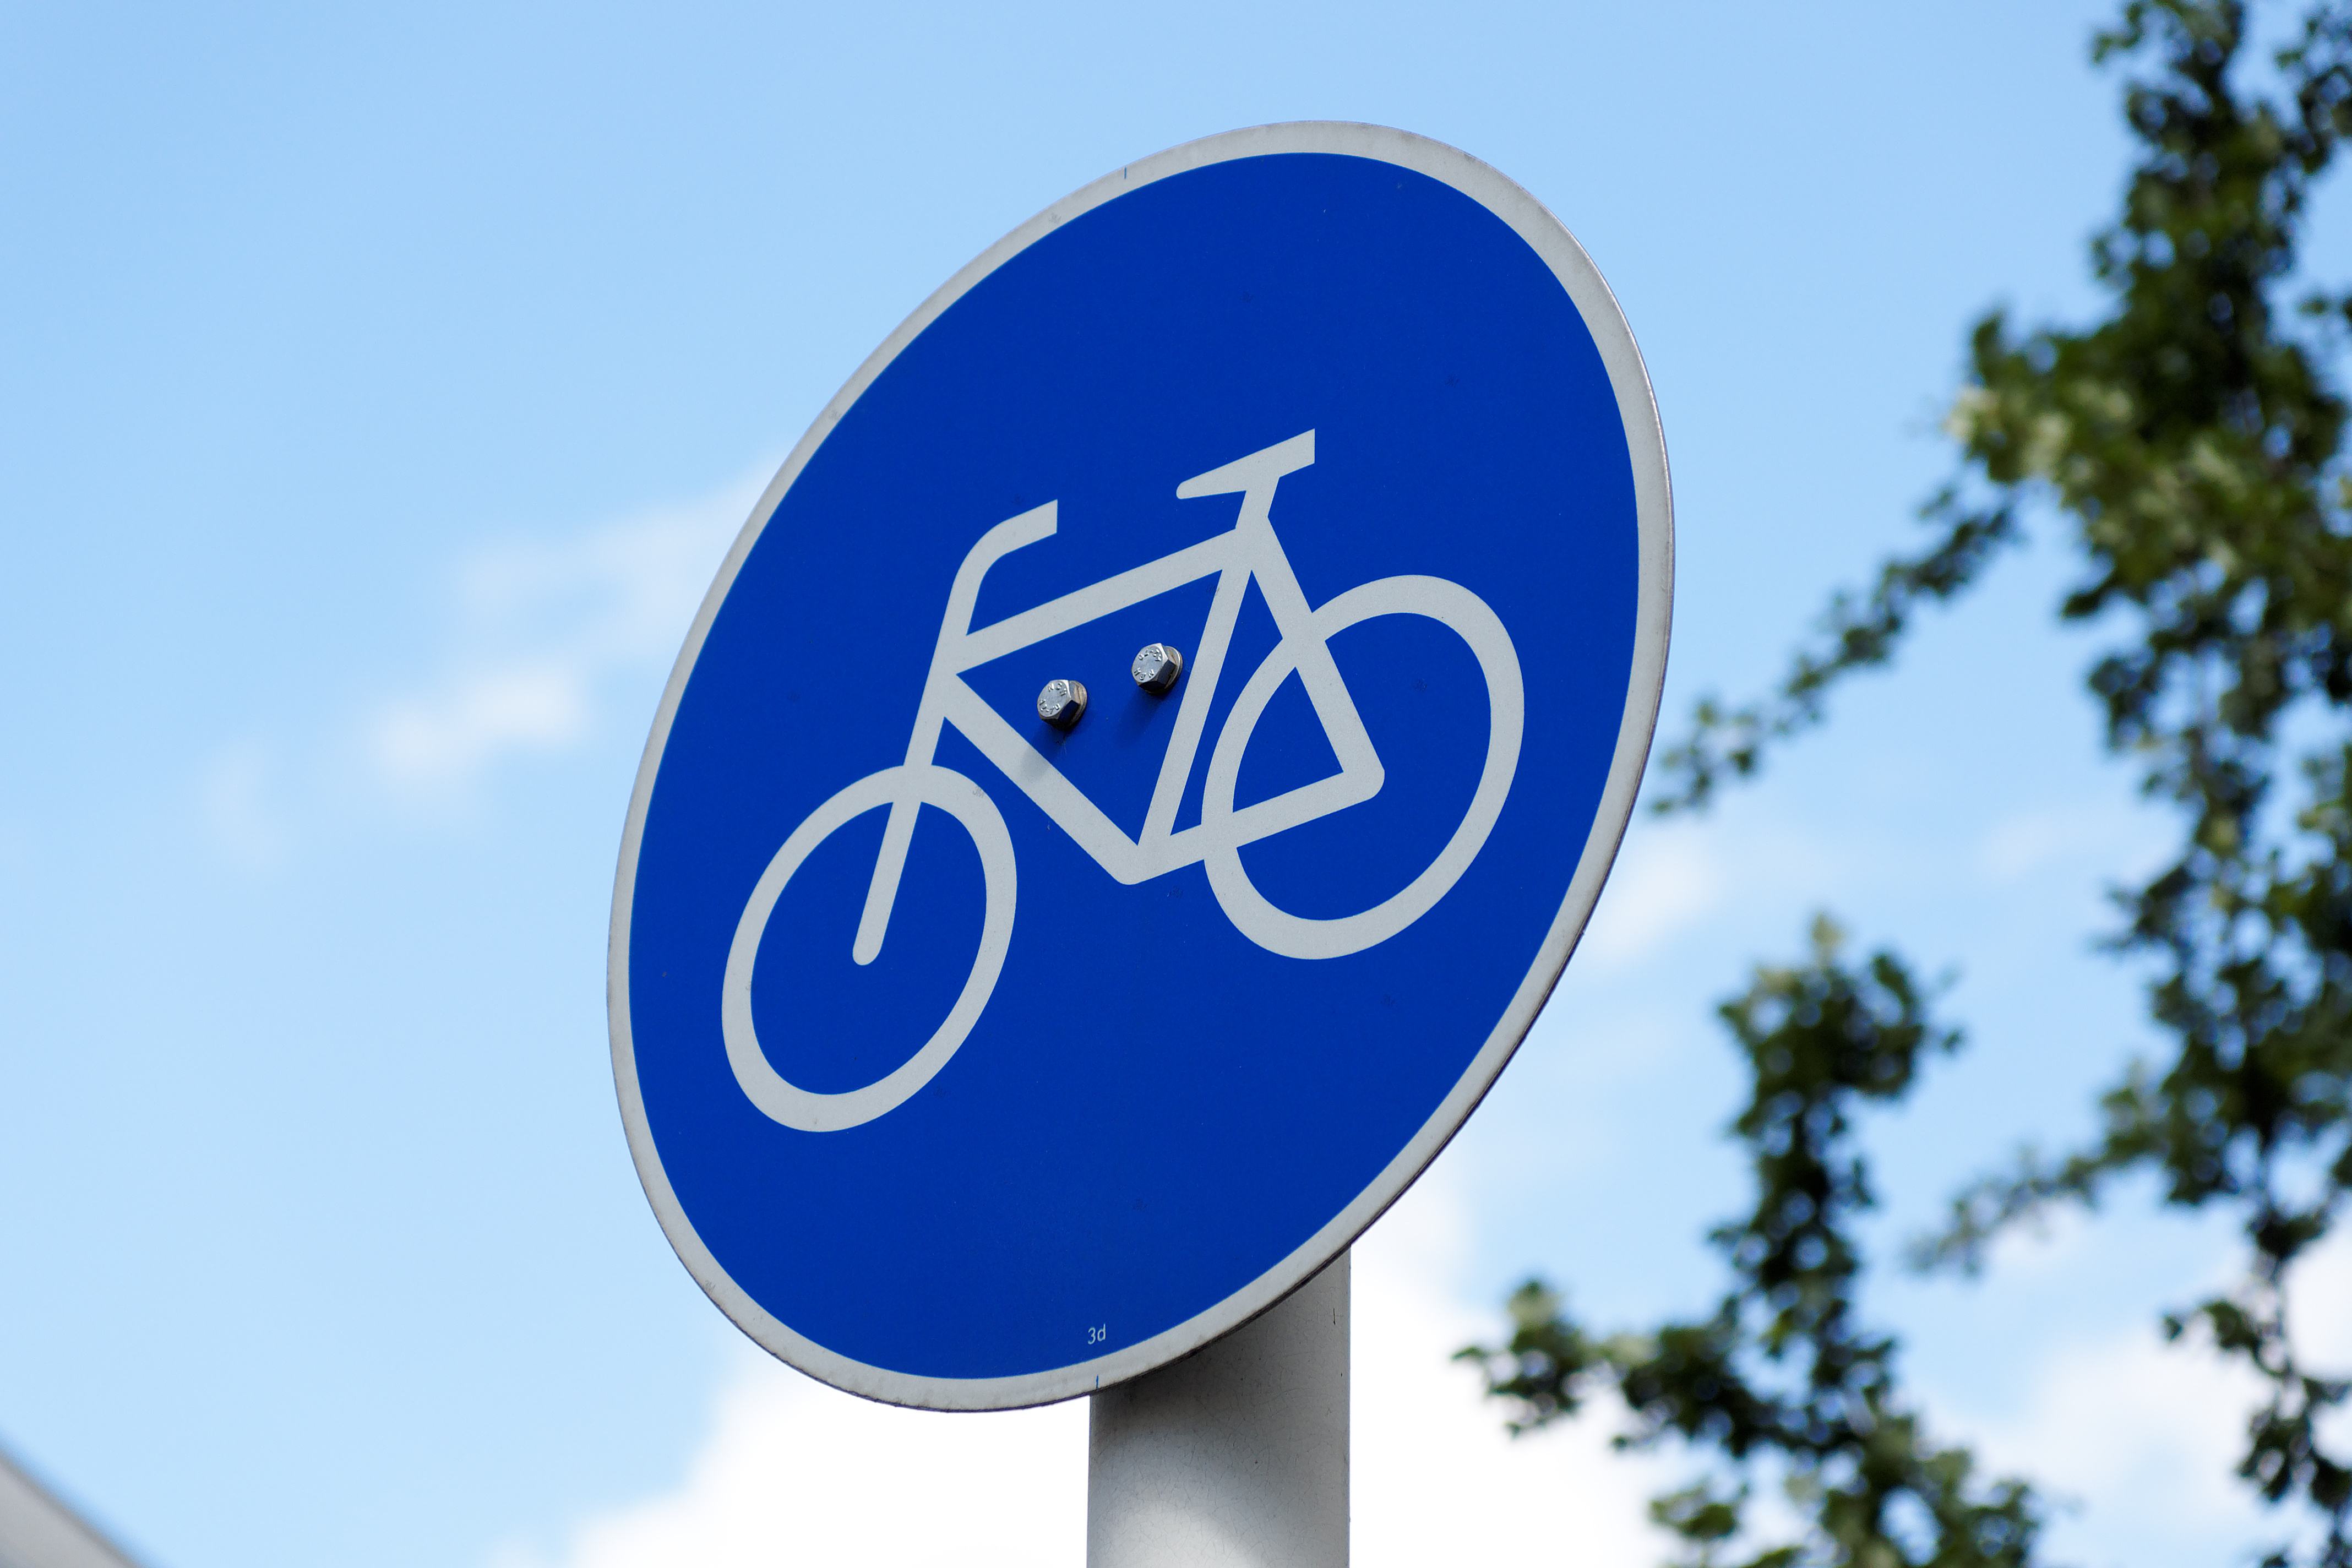 Zu sehen ist ein rundes, blaues Verkehrsschild  auf dem ein Fahrrad abgebildet ist.